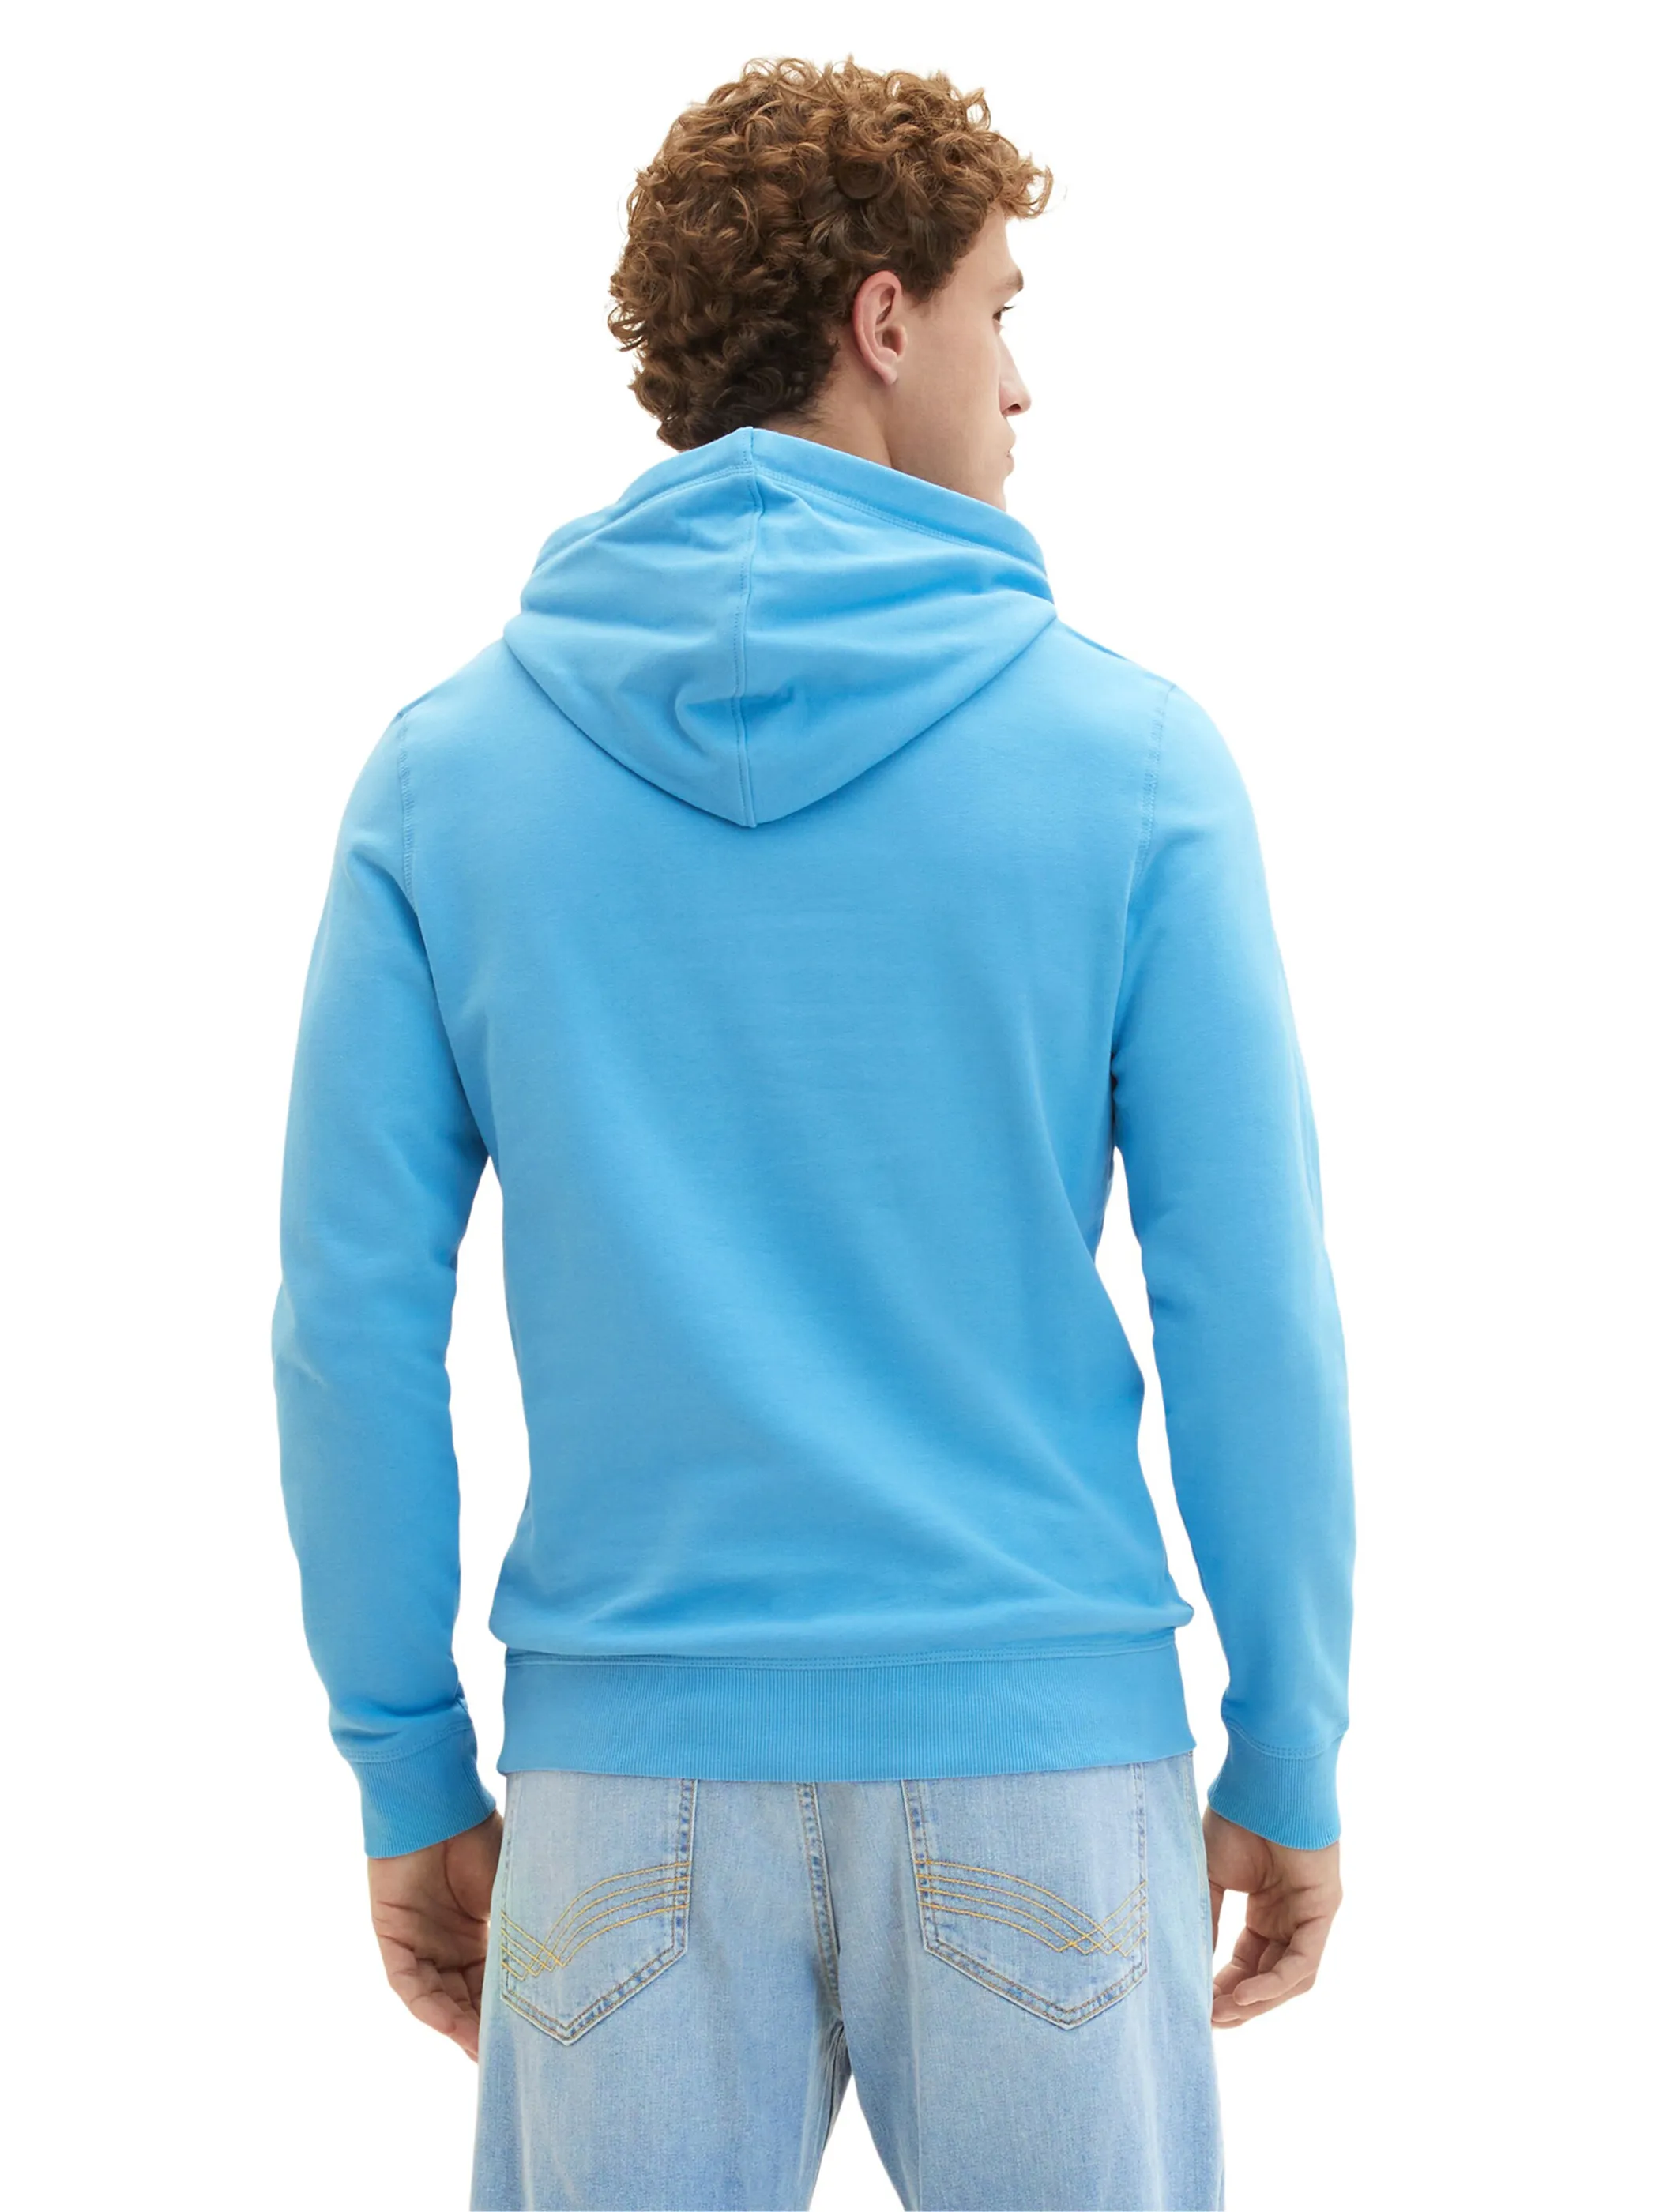 Tom Tailor 1038605 hoodie with print Blau 880532 18395 2